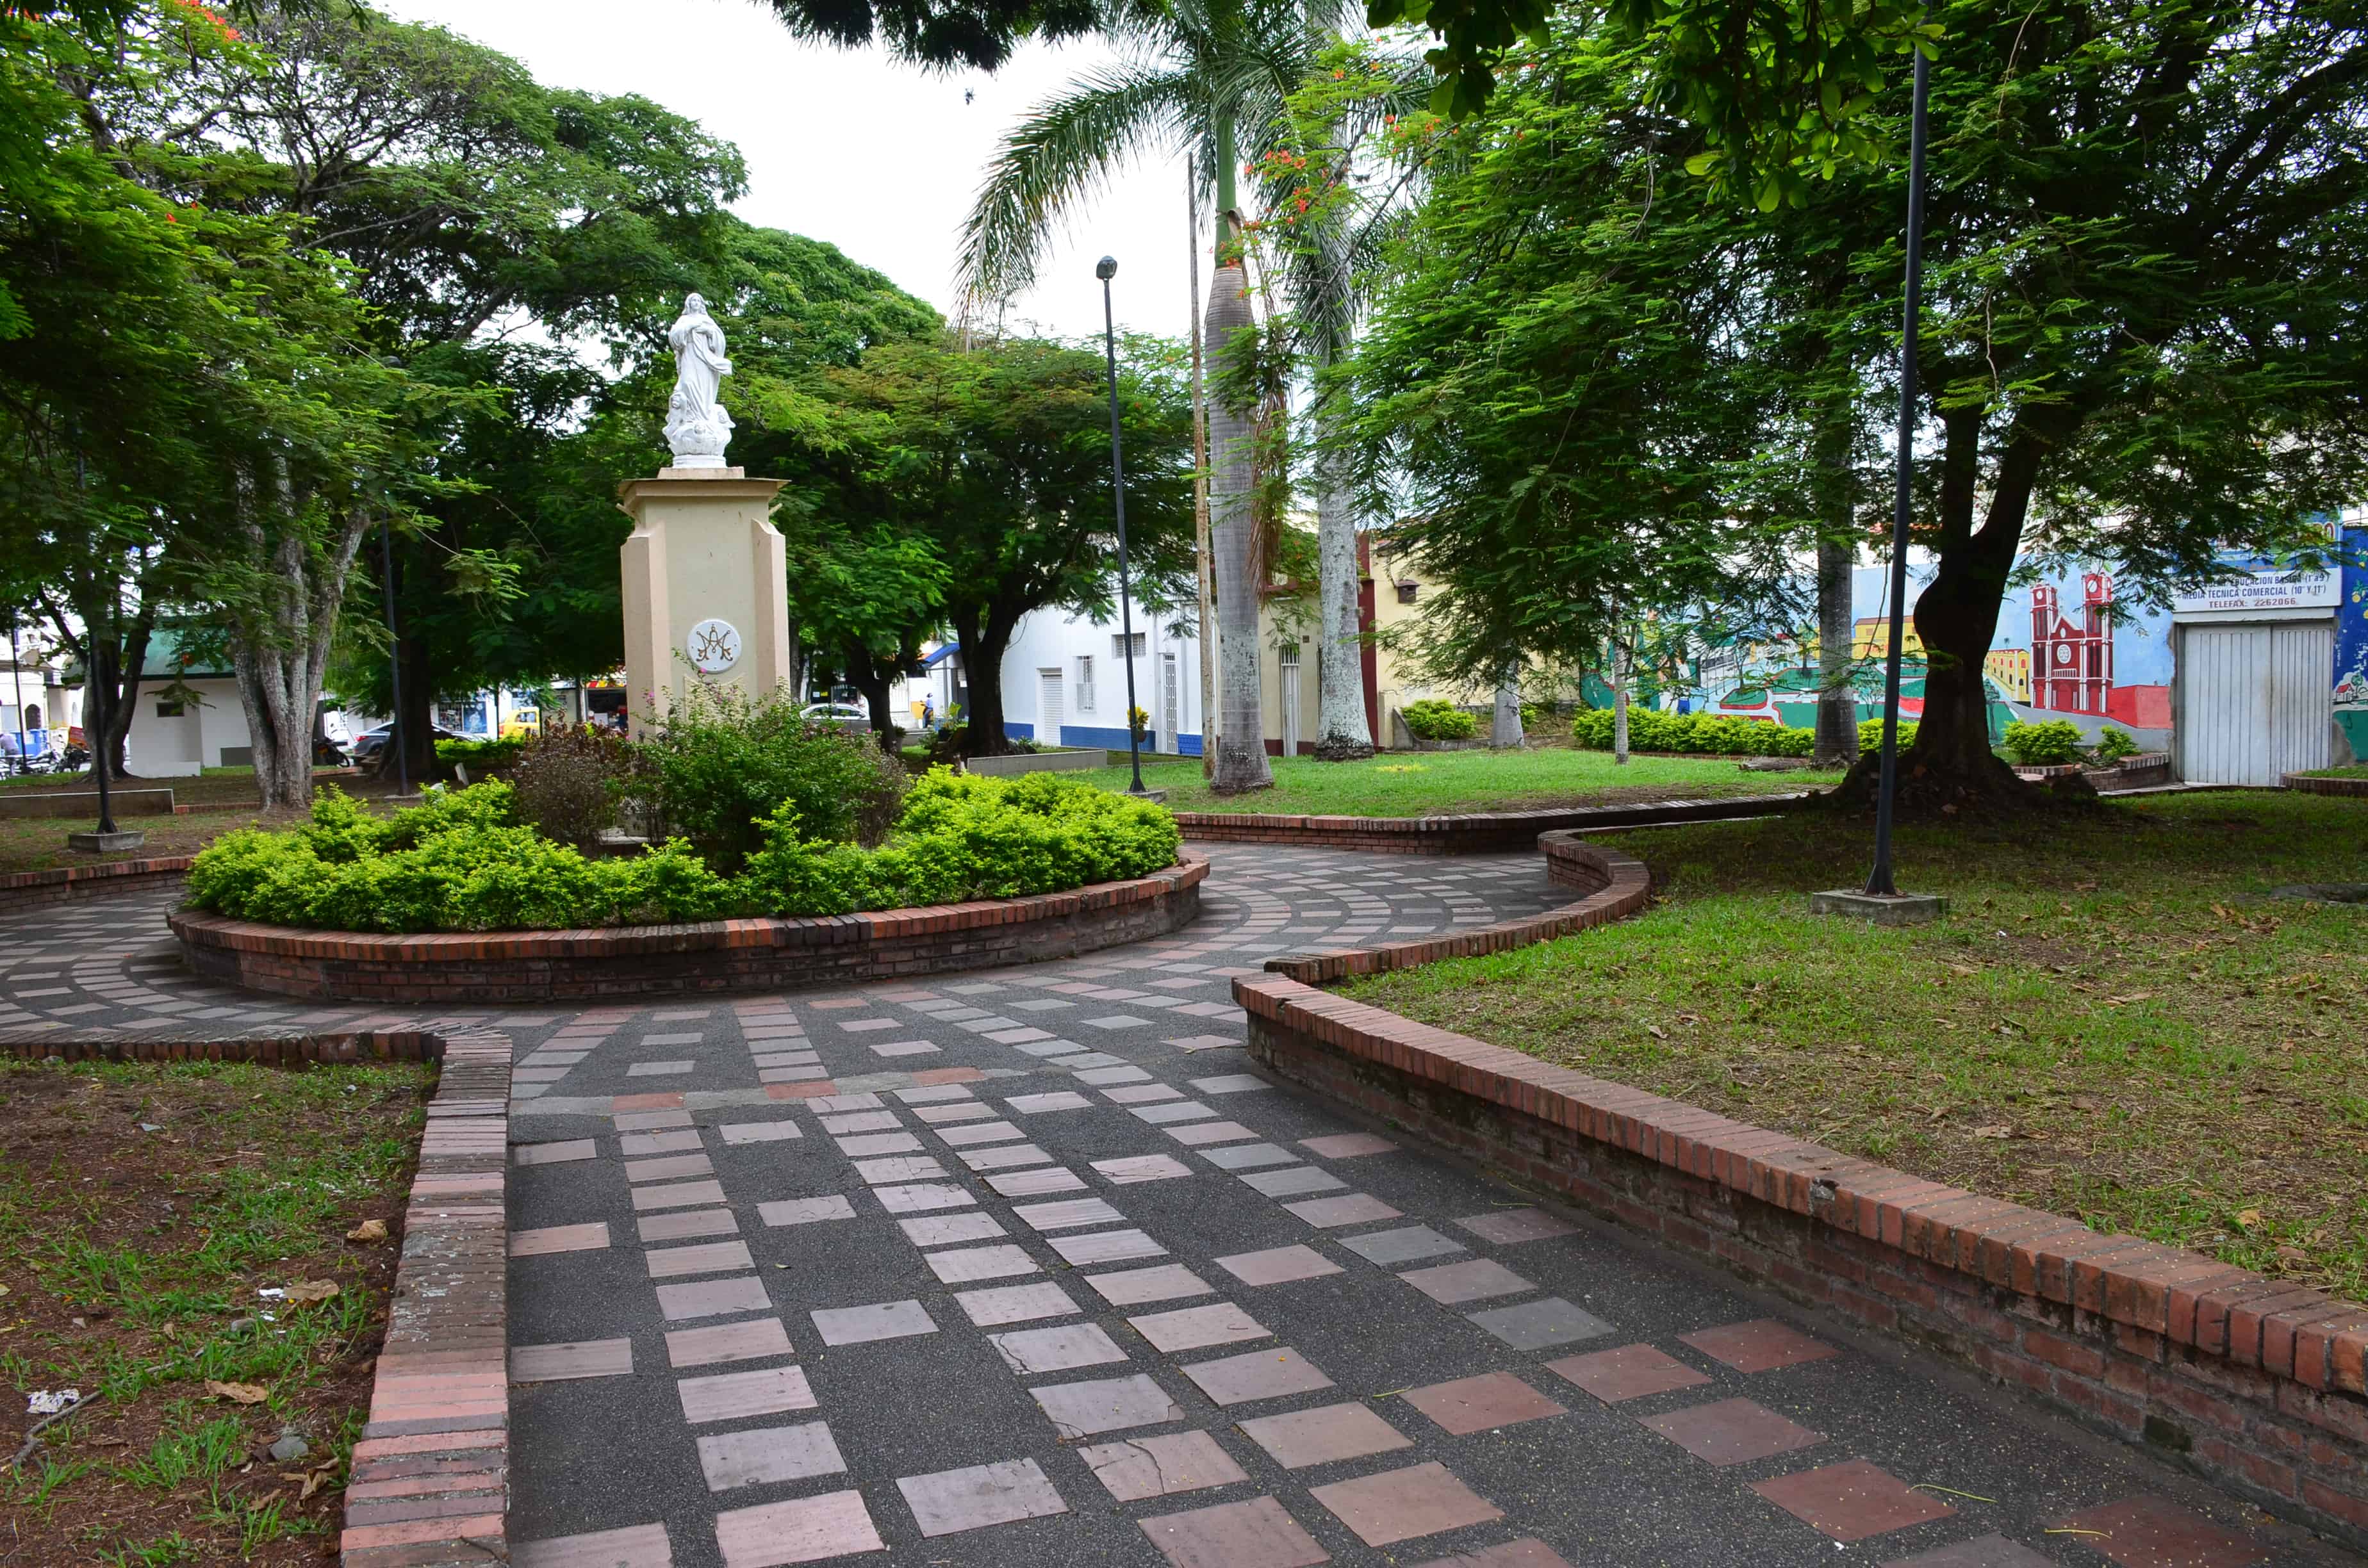 Parque de los Franciscanos across from Iglesia Nuestra Señora del Carmen in Tuluá, Valle del Cauca, Colombia